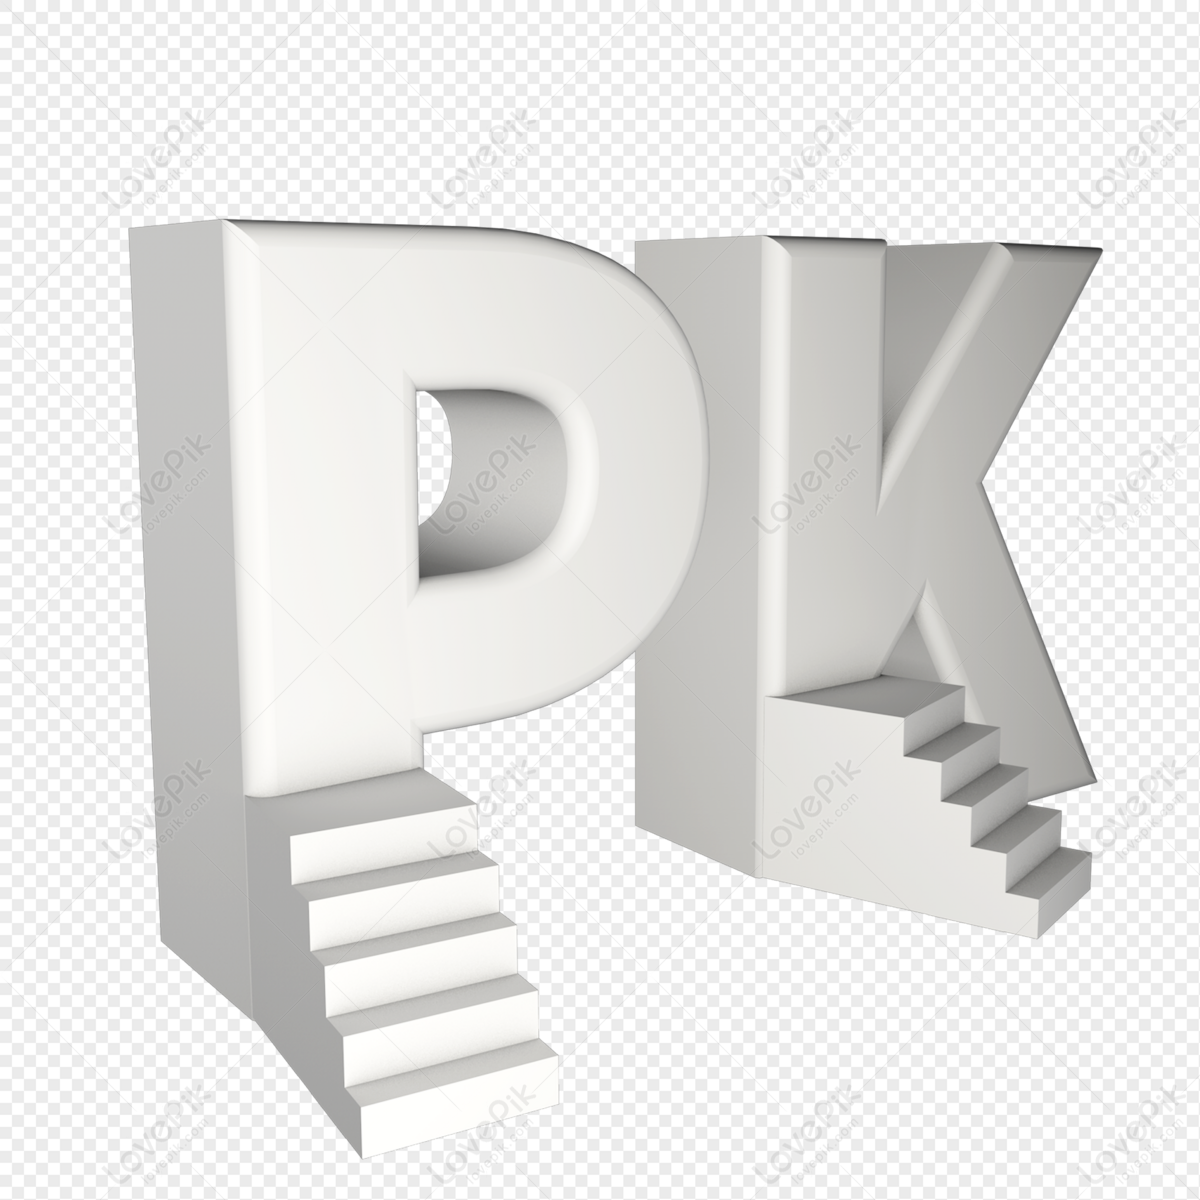 File:Rozee.pk logo.svg - Wikipedia